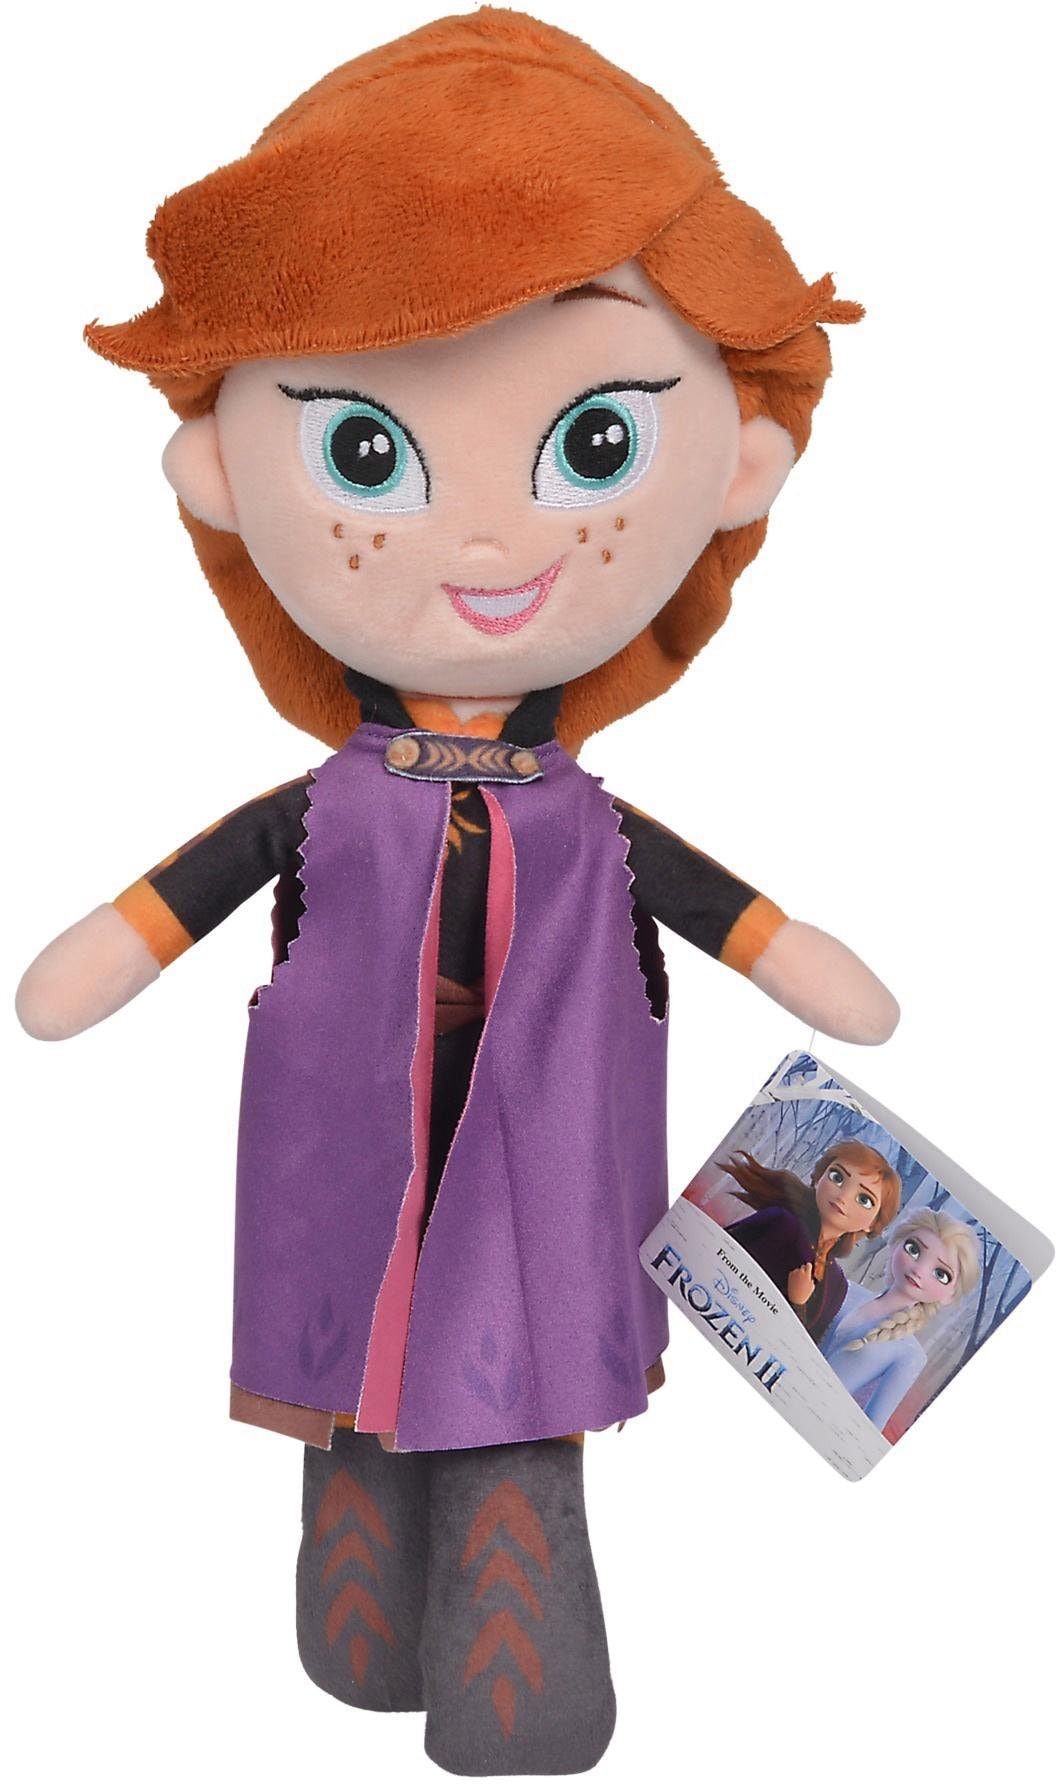 SIMBA Plüschfigur »Disney Frozen 2, Anna, 25 cm« online kaufen | OTTO